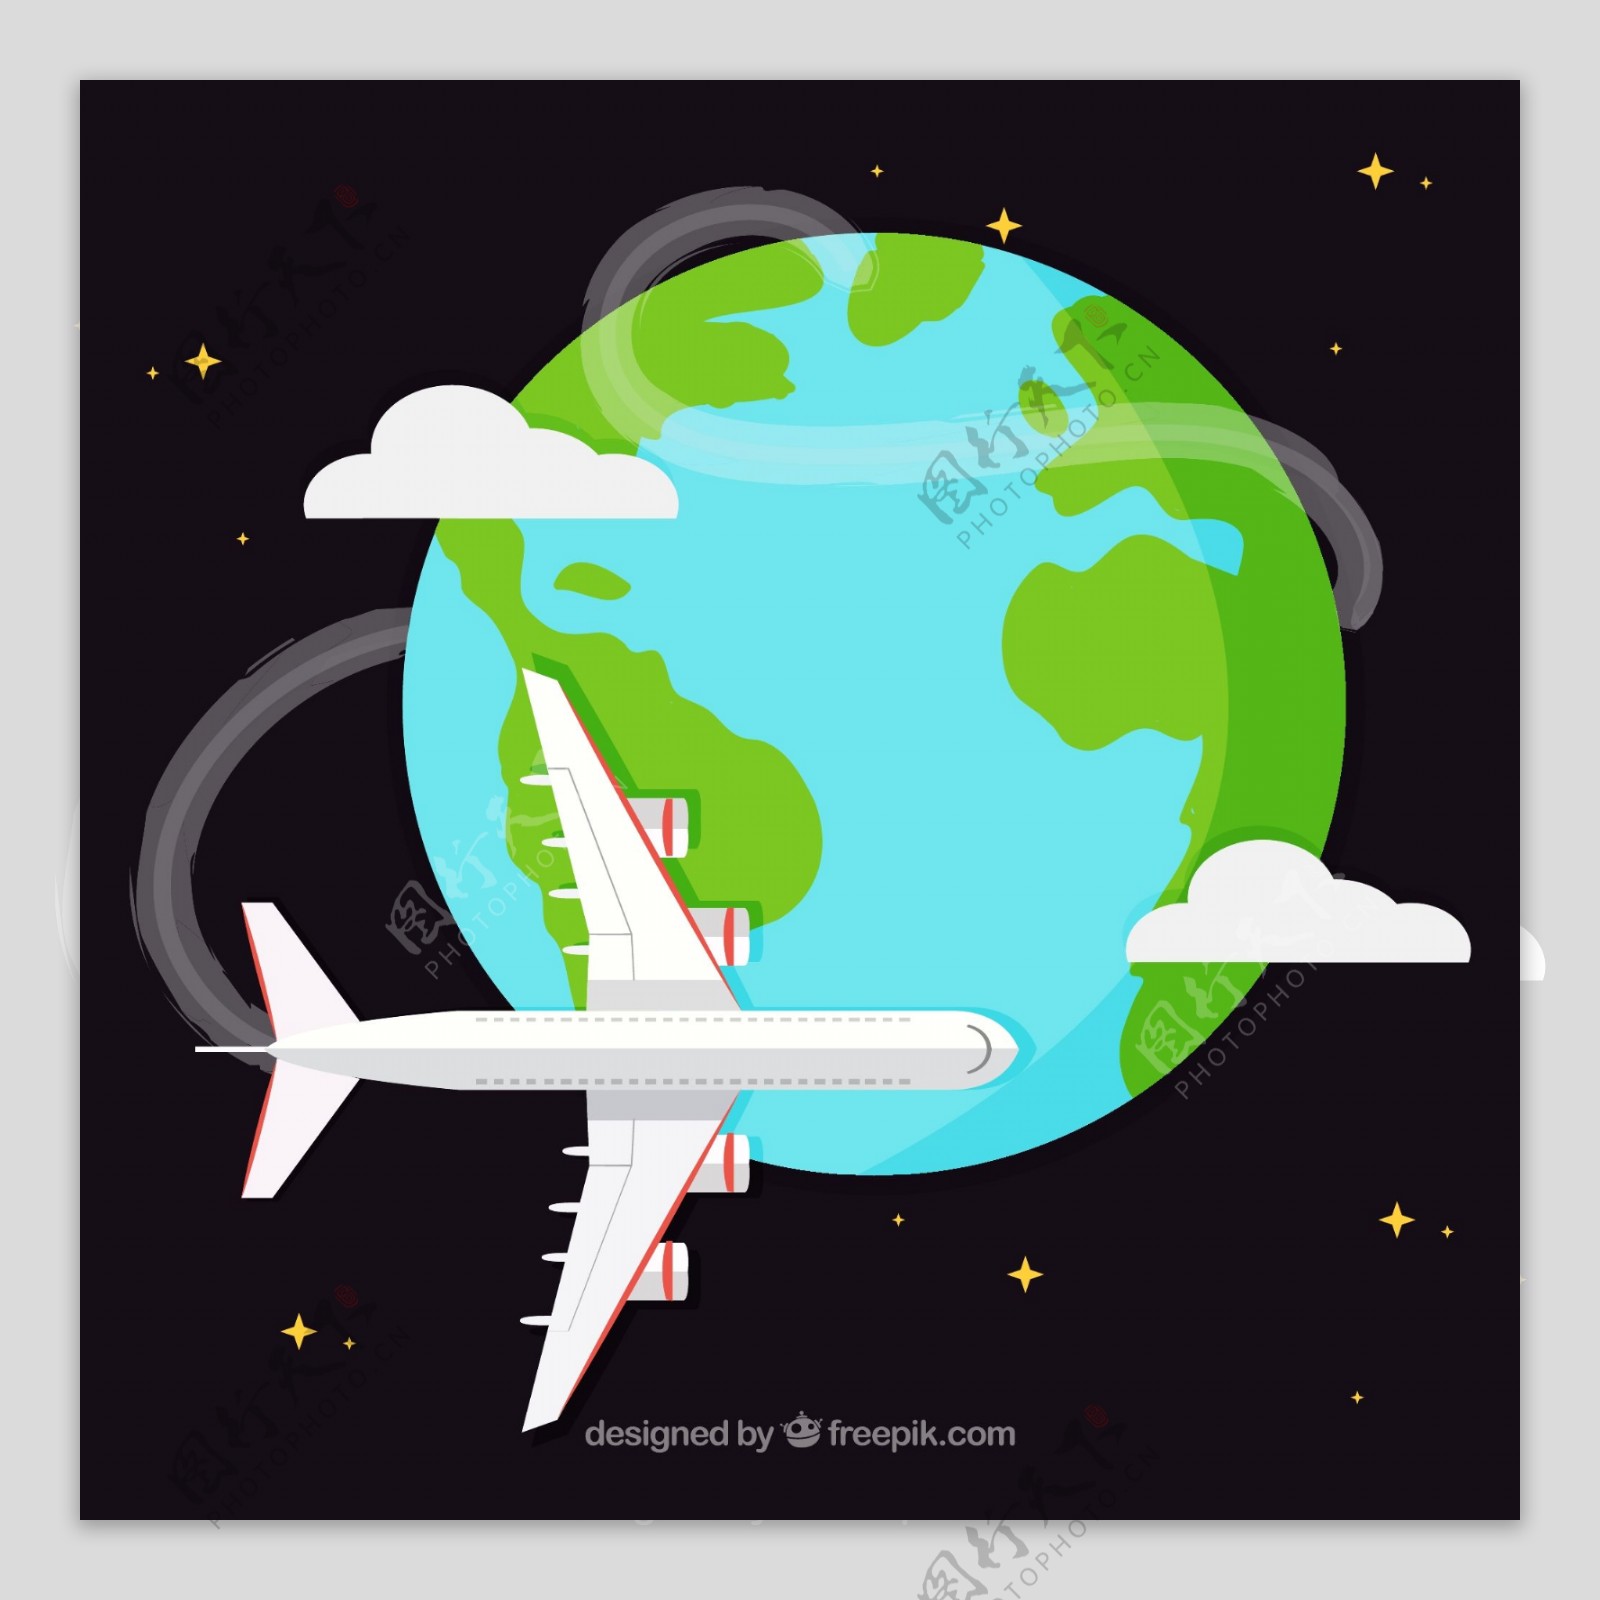 环球飞行飞机插画矢量素材图片